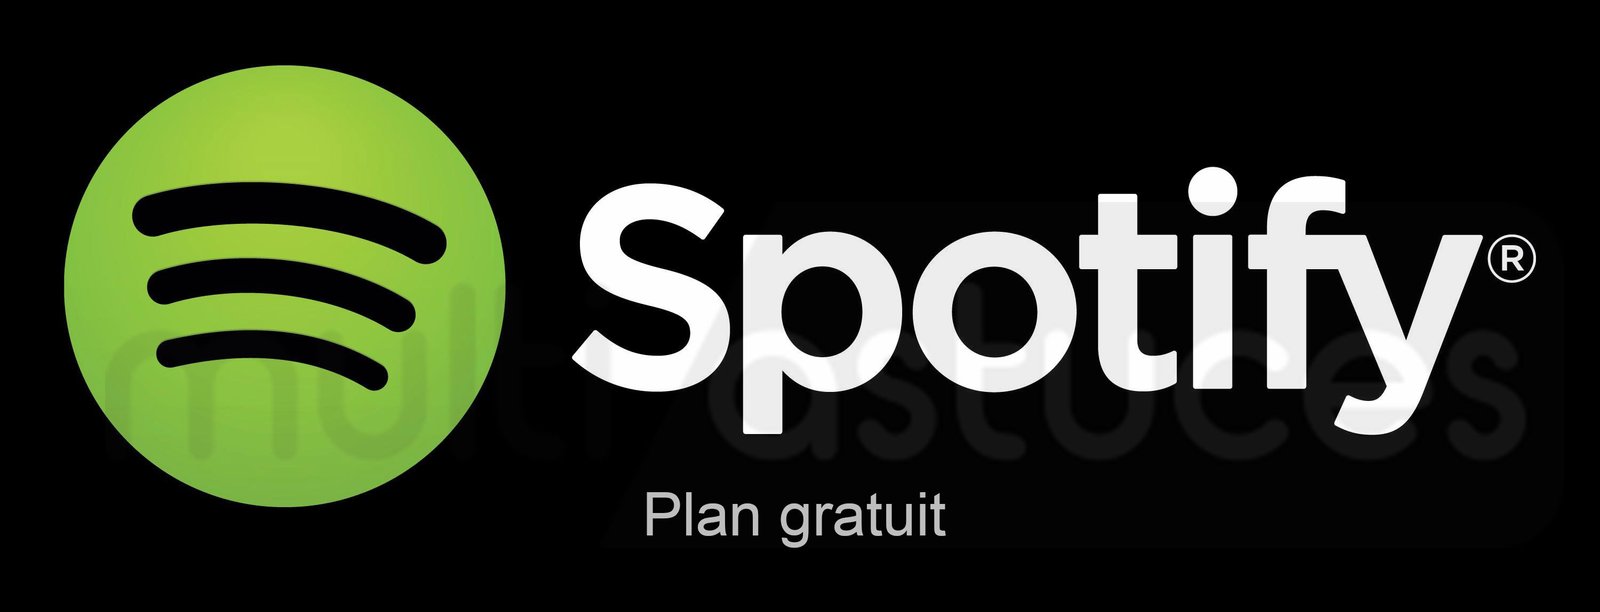 Spotify Gratuit vs Premium vs Étudiant vs Plan familial